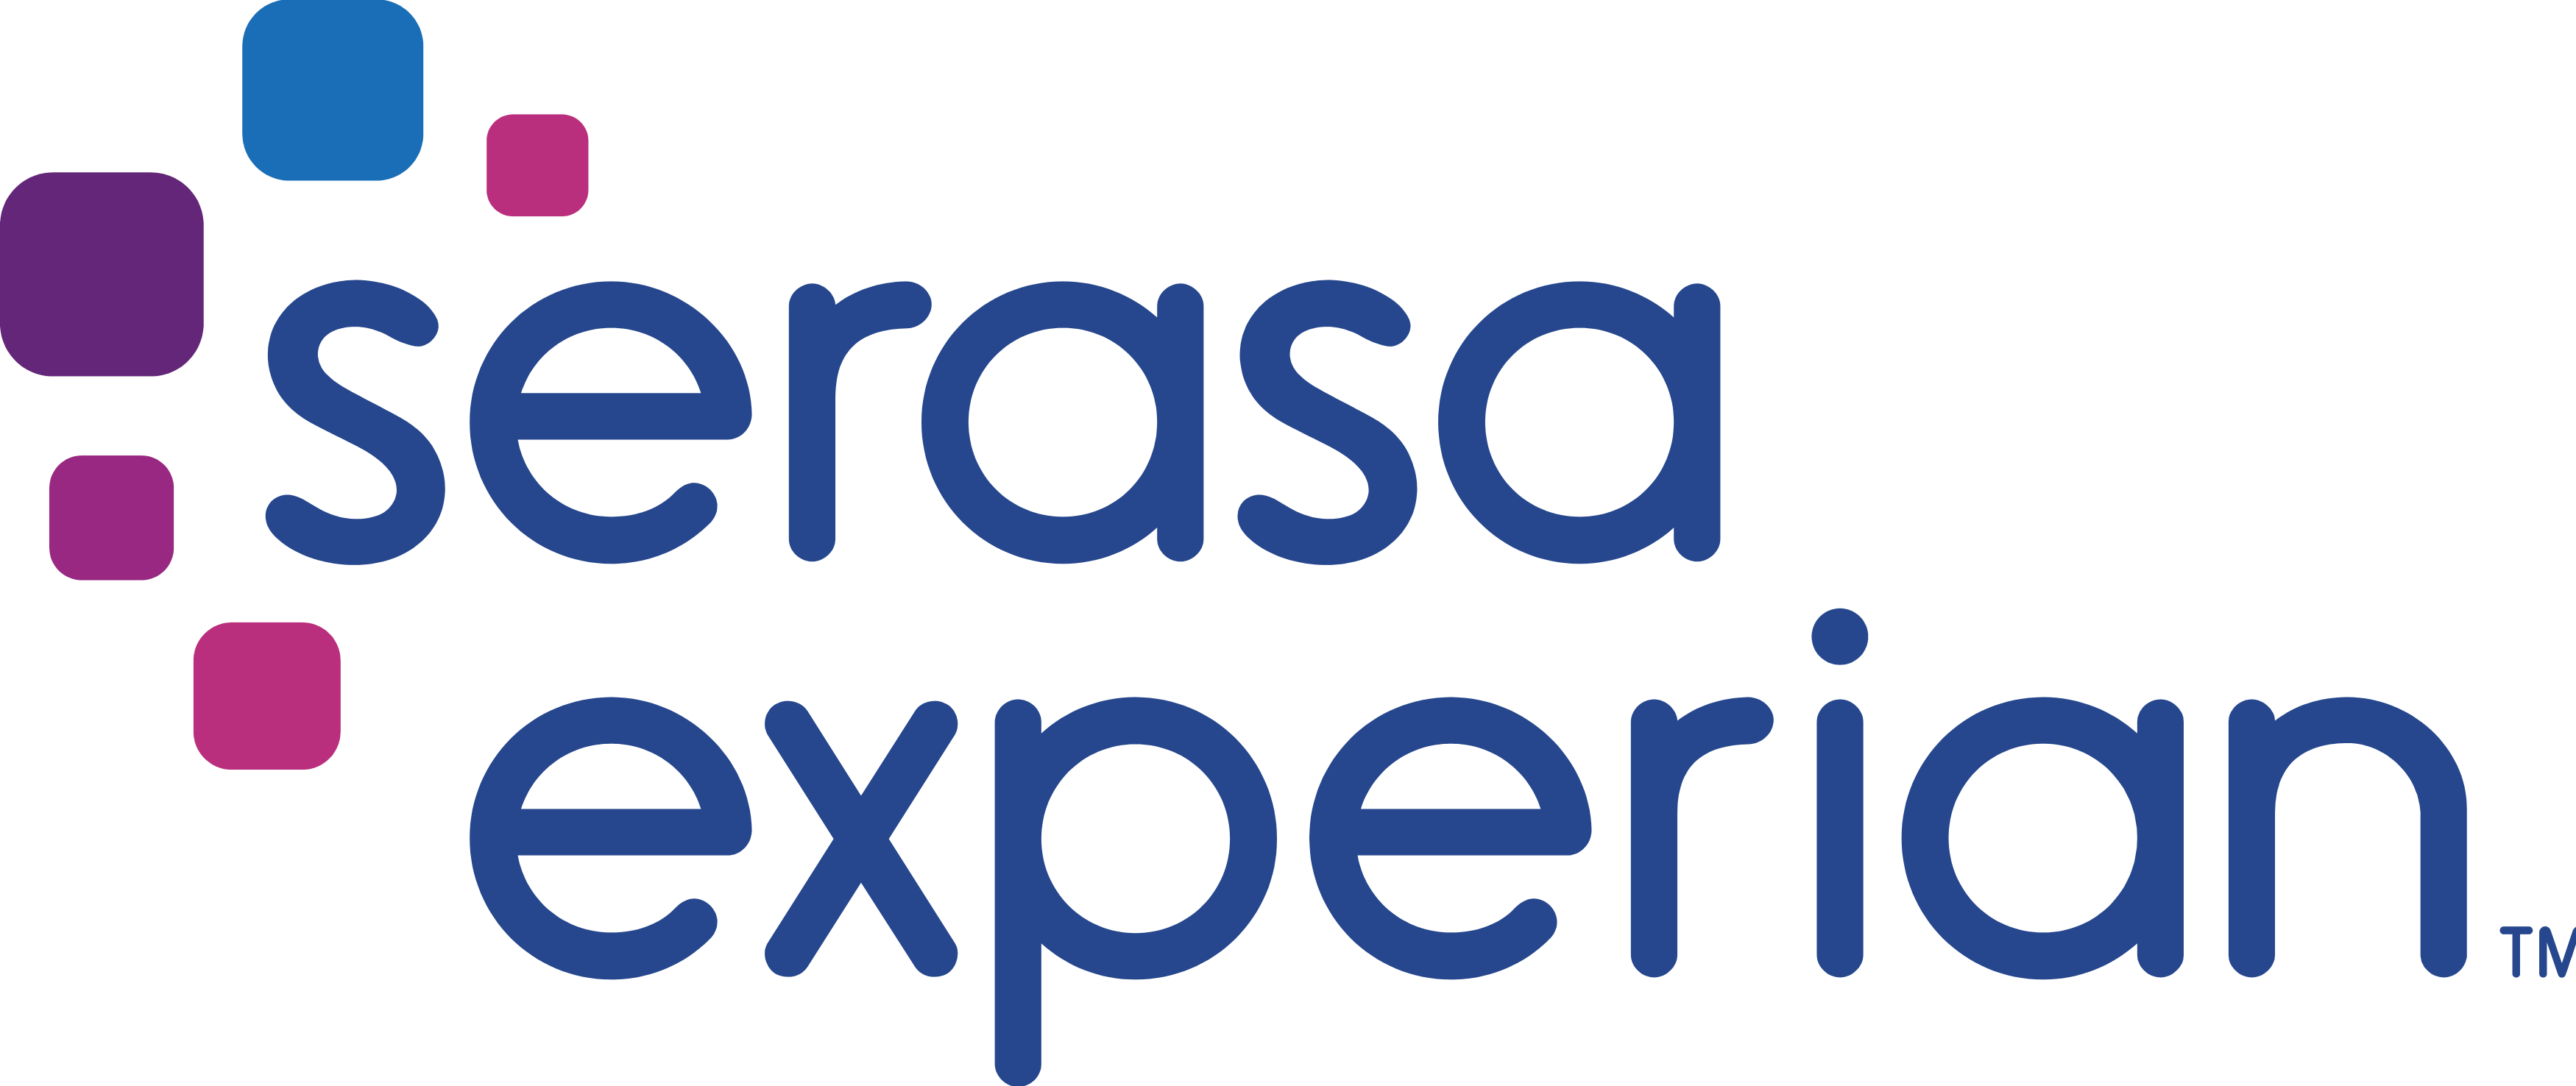 O Serasa Experian é um dos maiores avaliadores de crédito do Brasil. Fonte: Serasa.